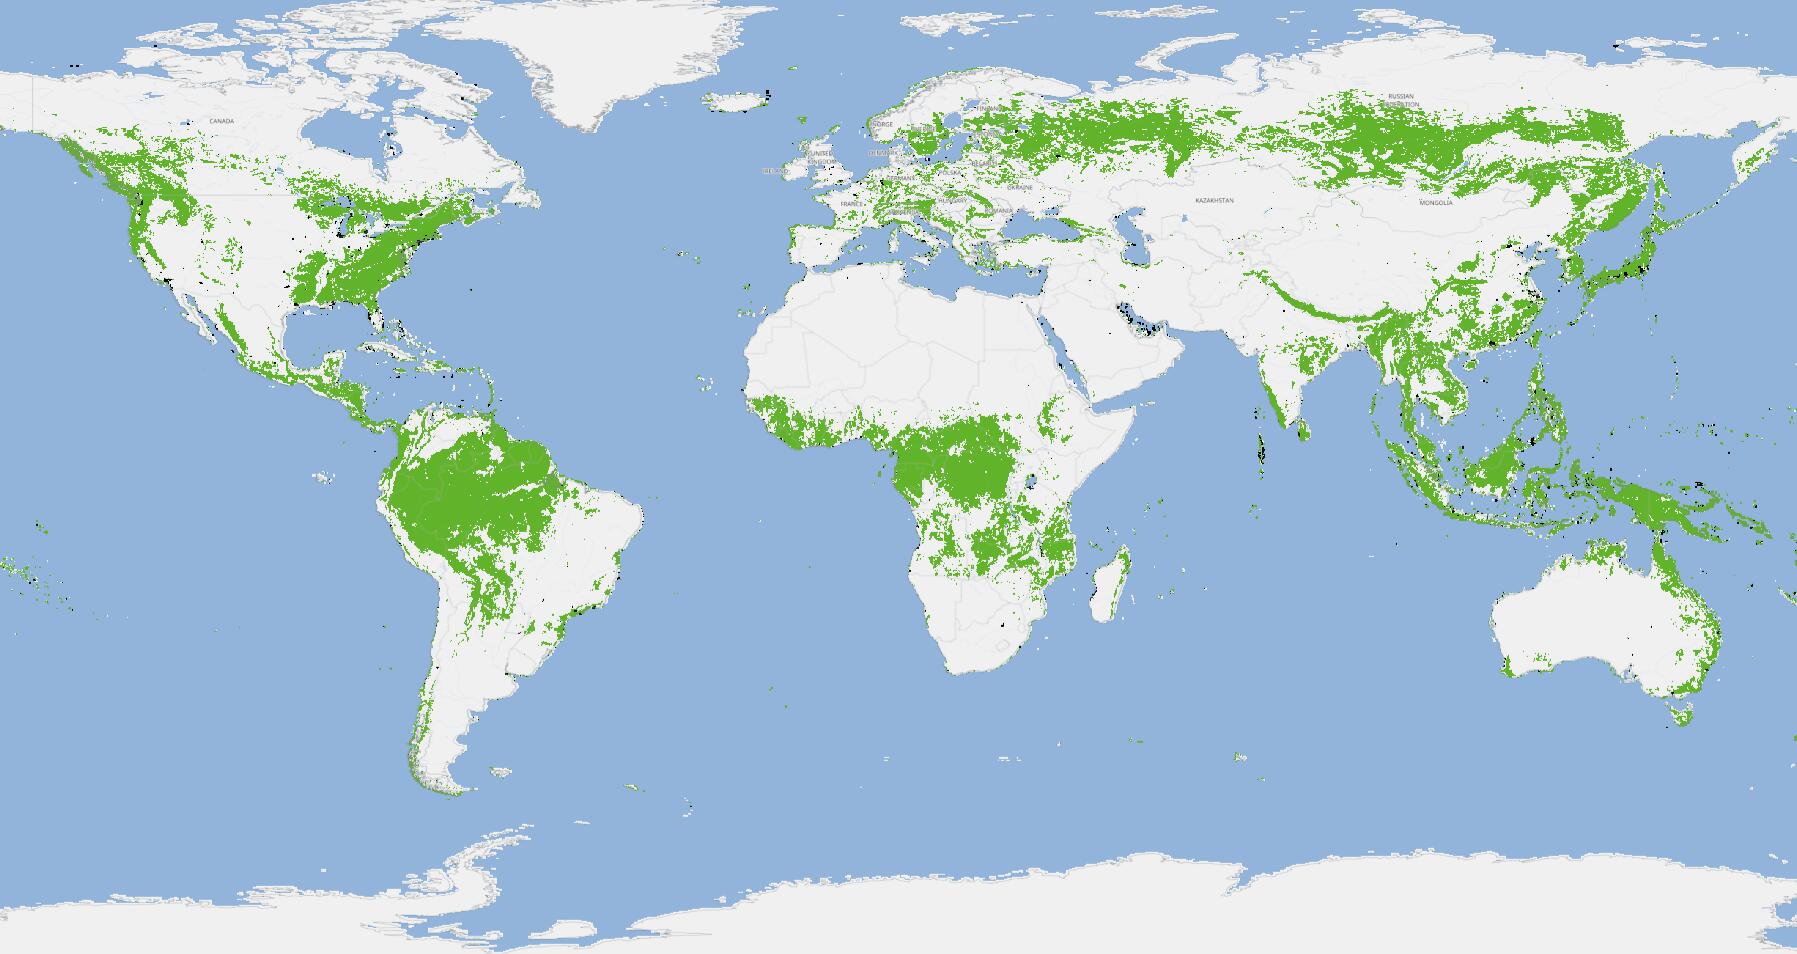 原创好消息中国18年森林增长2690卫星数据三大地区更绿了